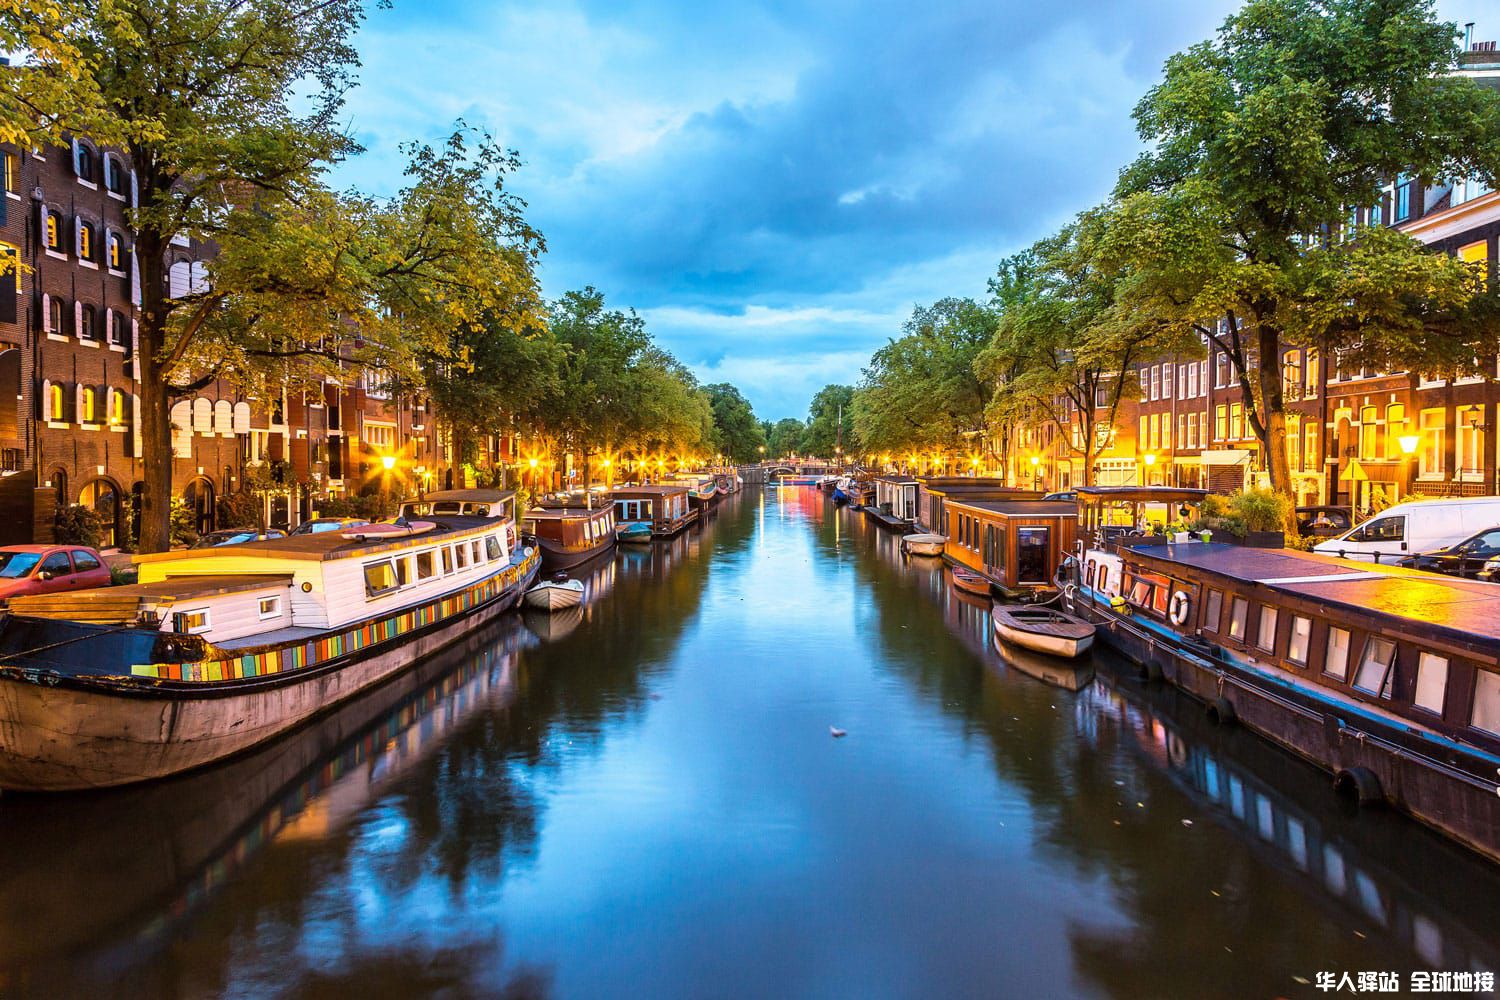 amsterdam-canals-netherlands-shutterstock_245749633.jpg